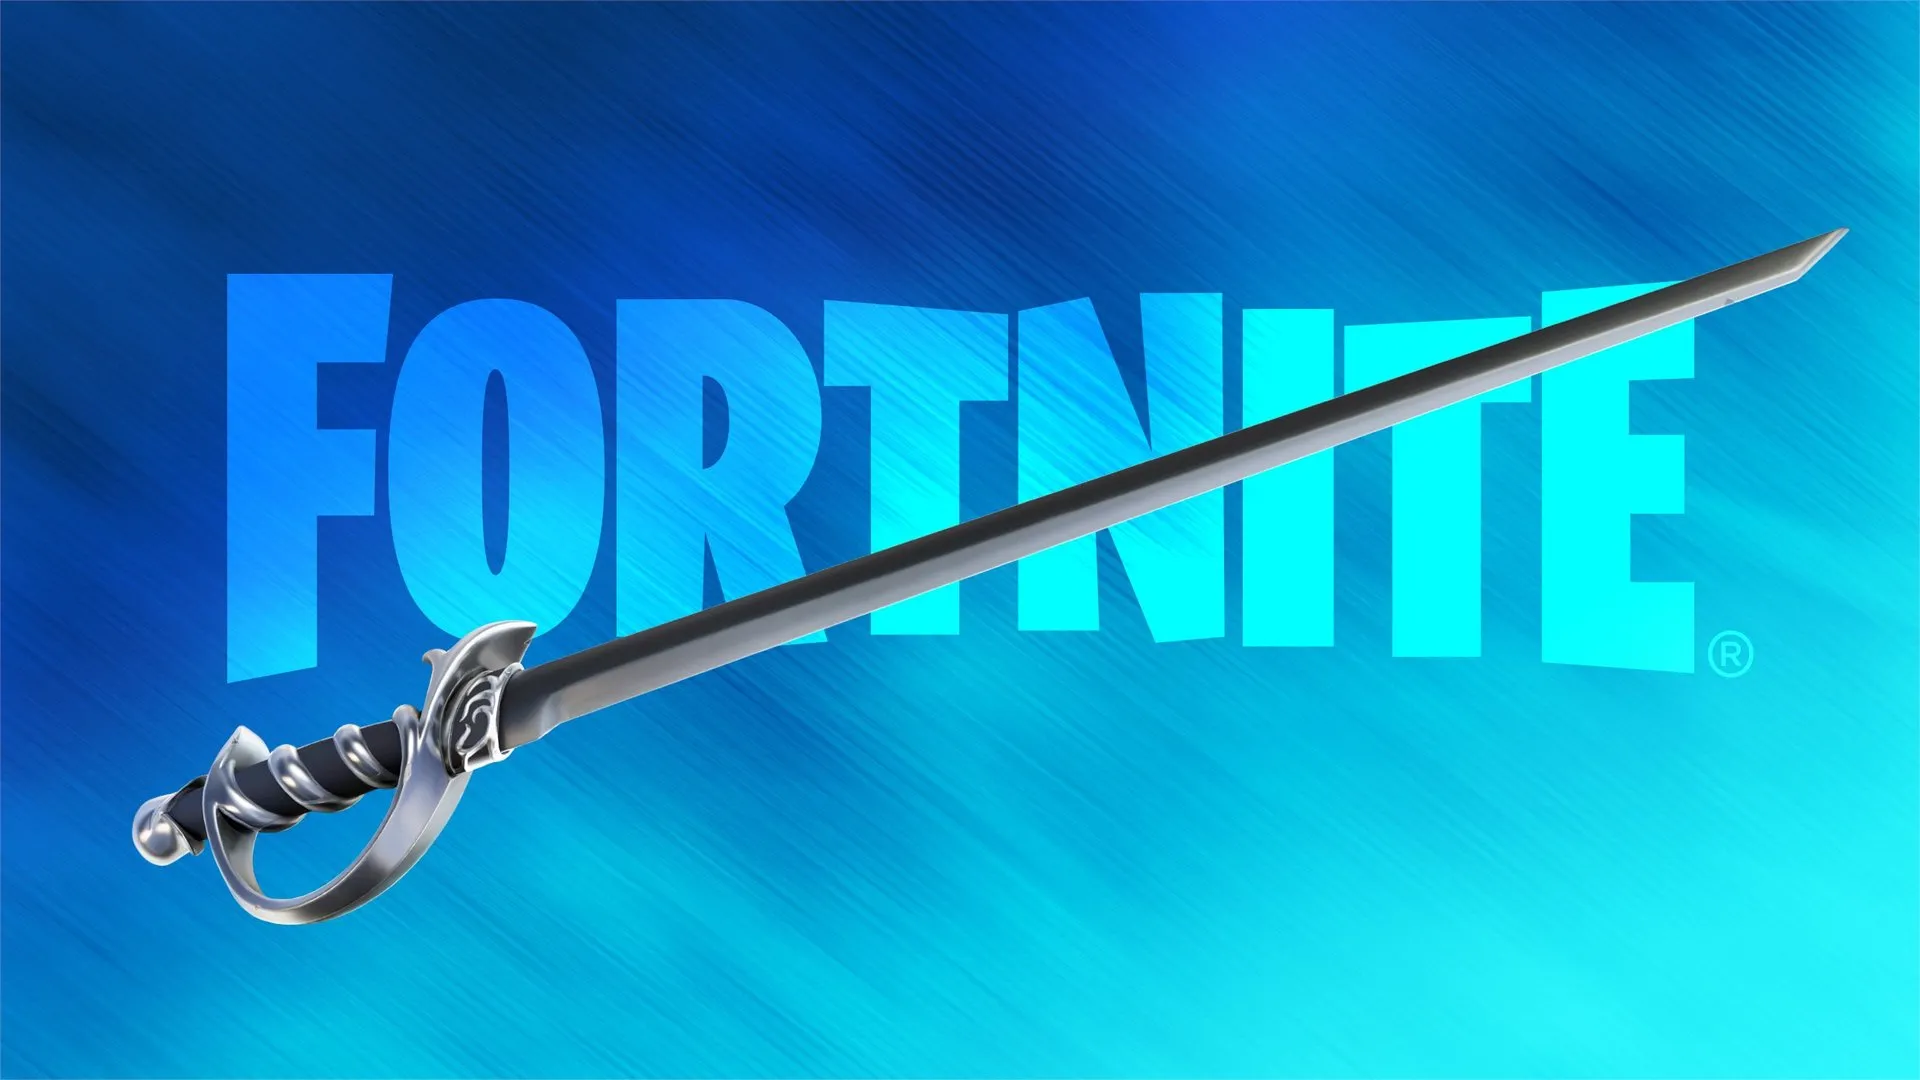 Fortnite > Conta Fortnite com Renegade Raider Raríssima+150 skins